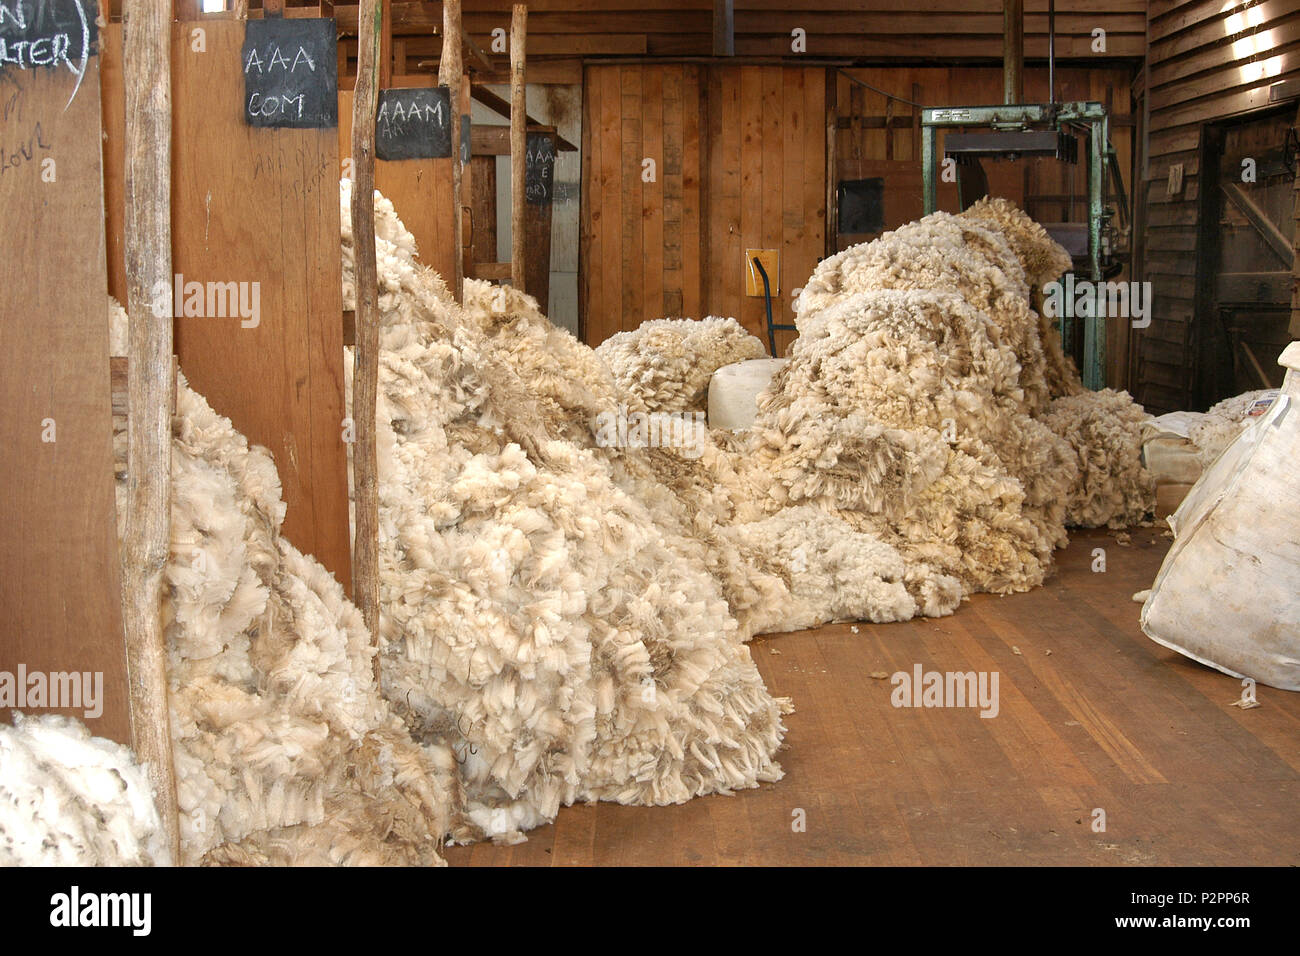 Wolle in Qualitäten in einer Scherung in Western Australia Schuppen sortiert Stockfoto